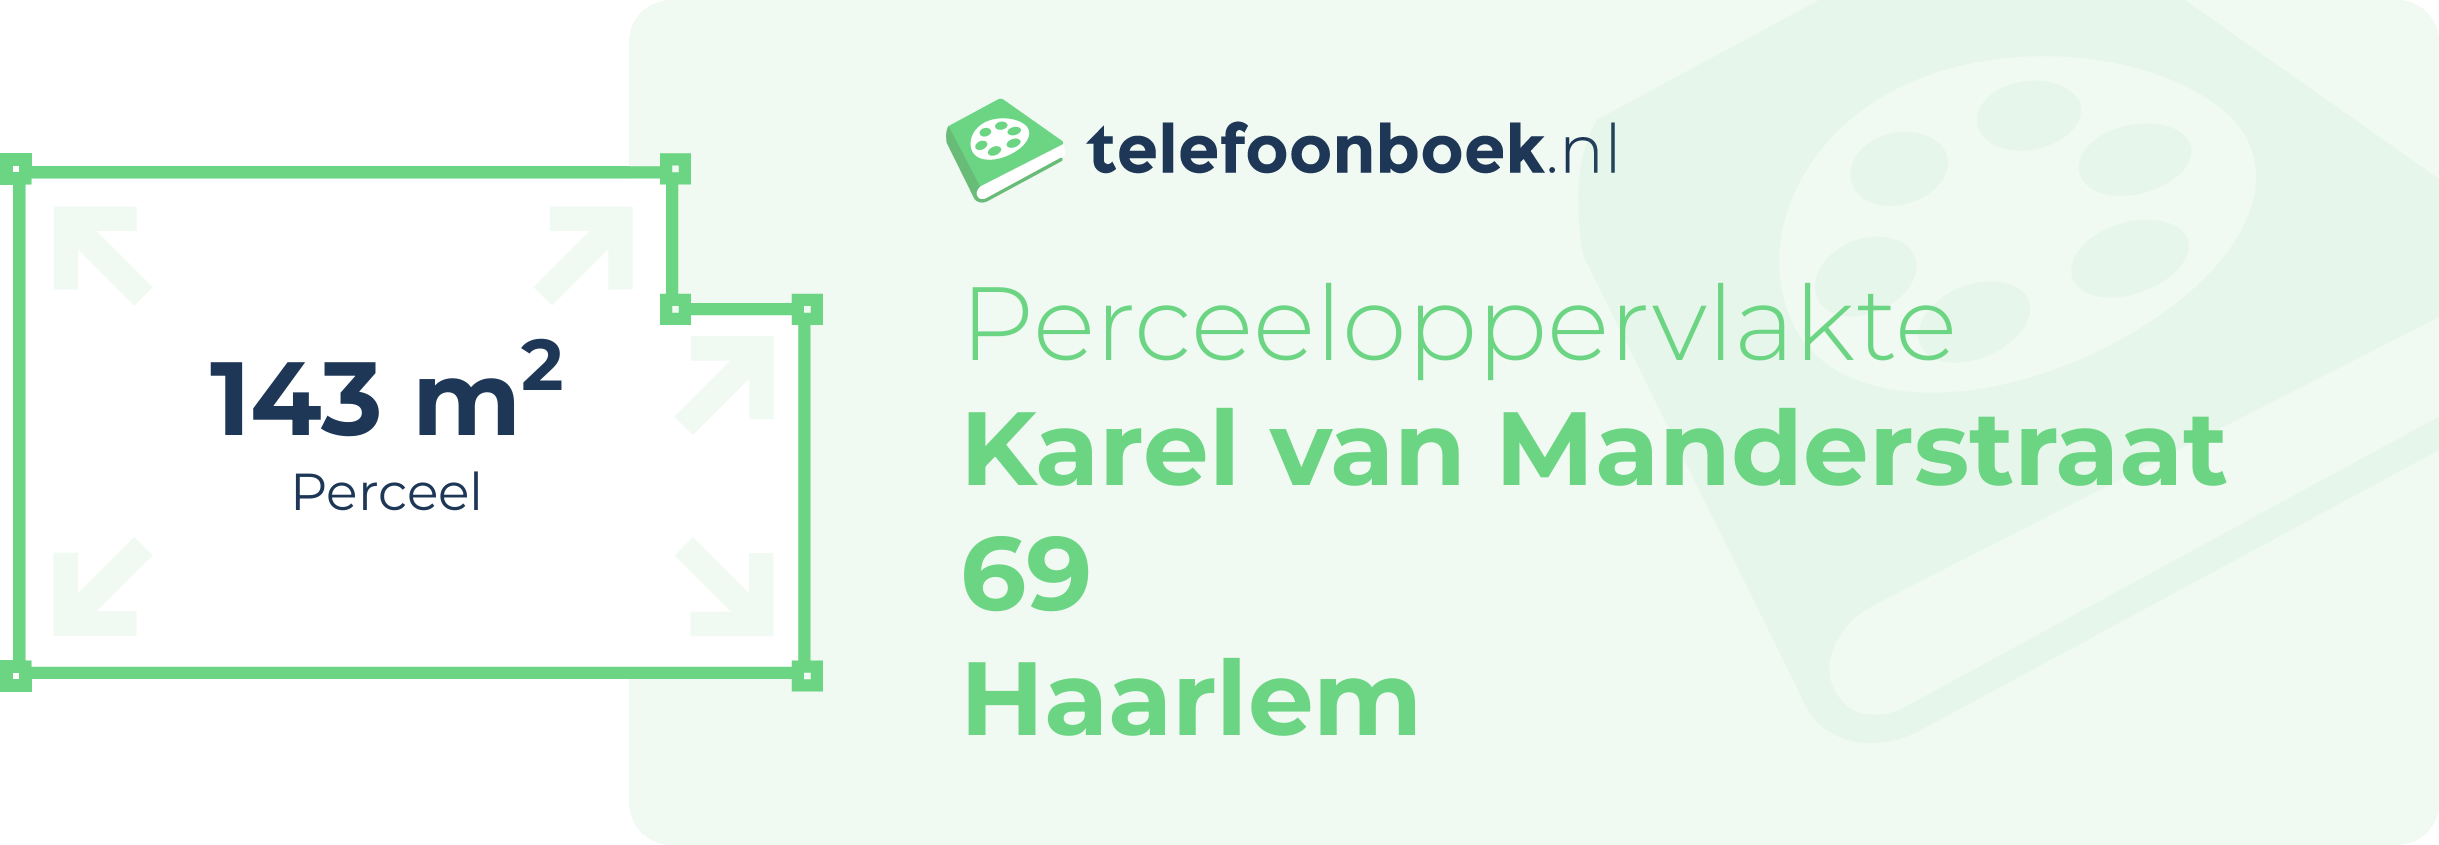 Perceeloppervlakte Karel Van Manderstraat 69 Haarlem